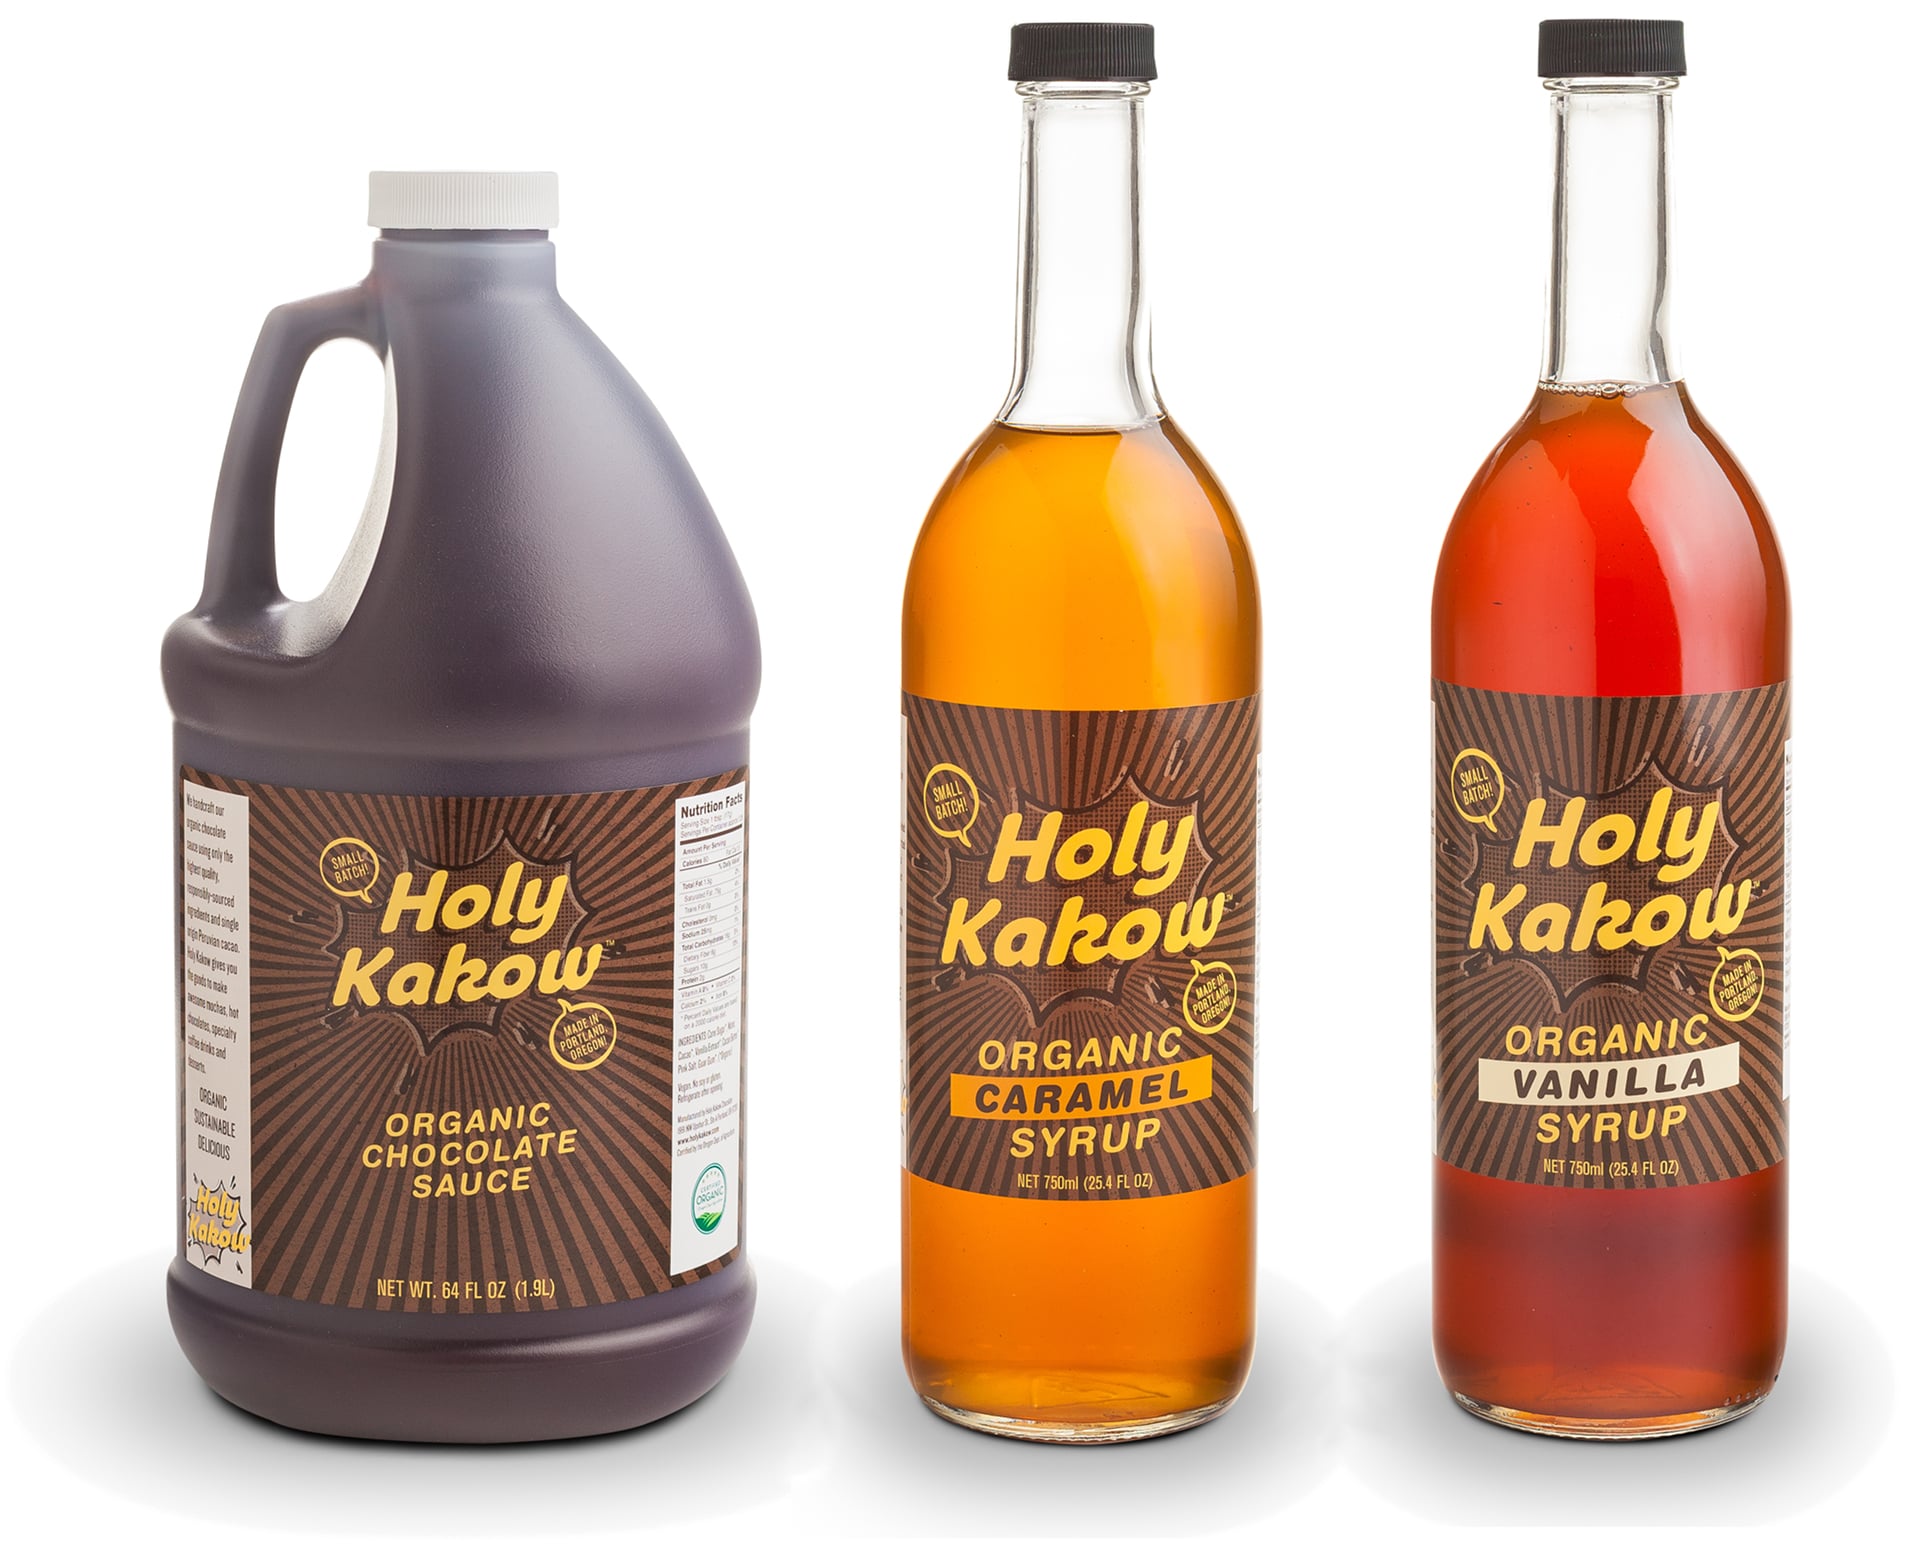 Holy Kakow Organic Sauce and Syrups